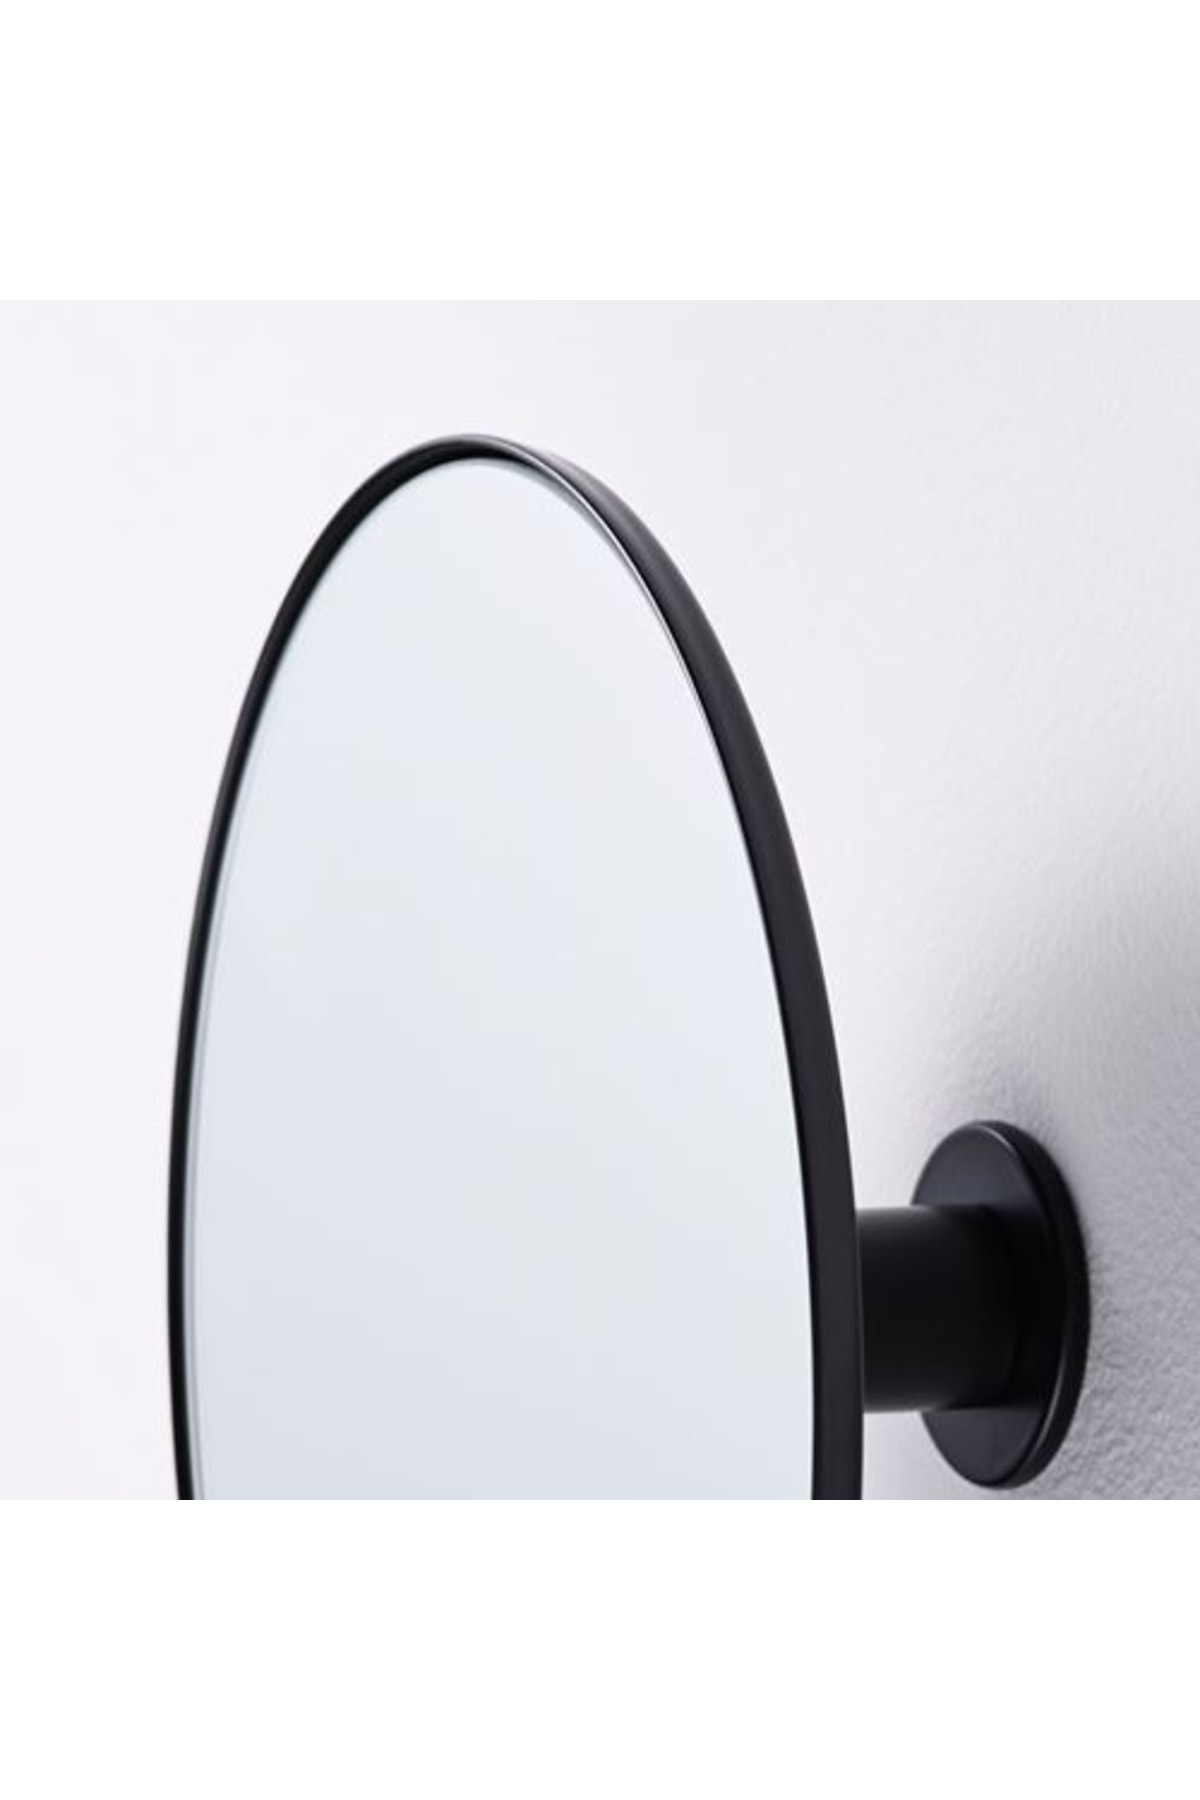 IKEA Plombo Ayna, Koyu Gri UX5002